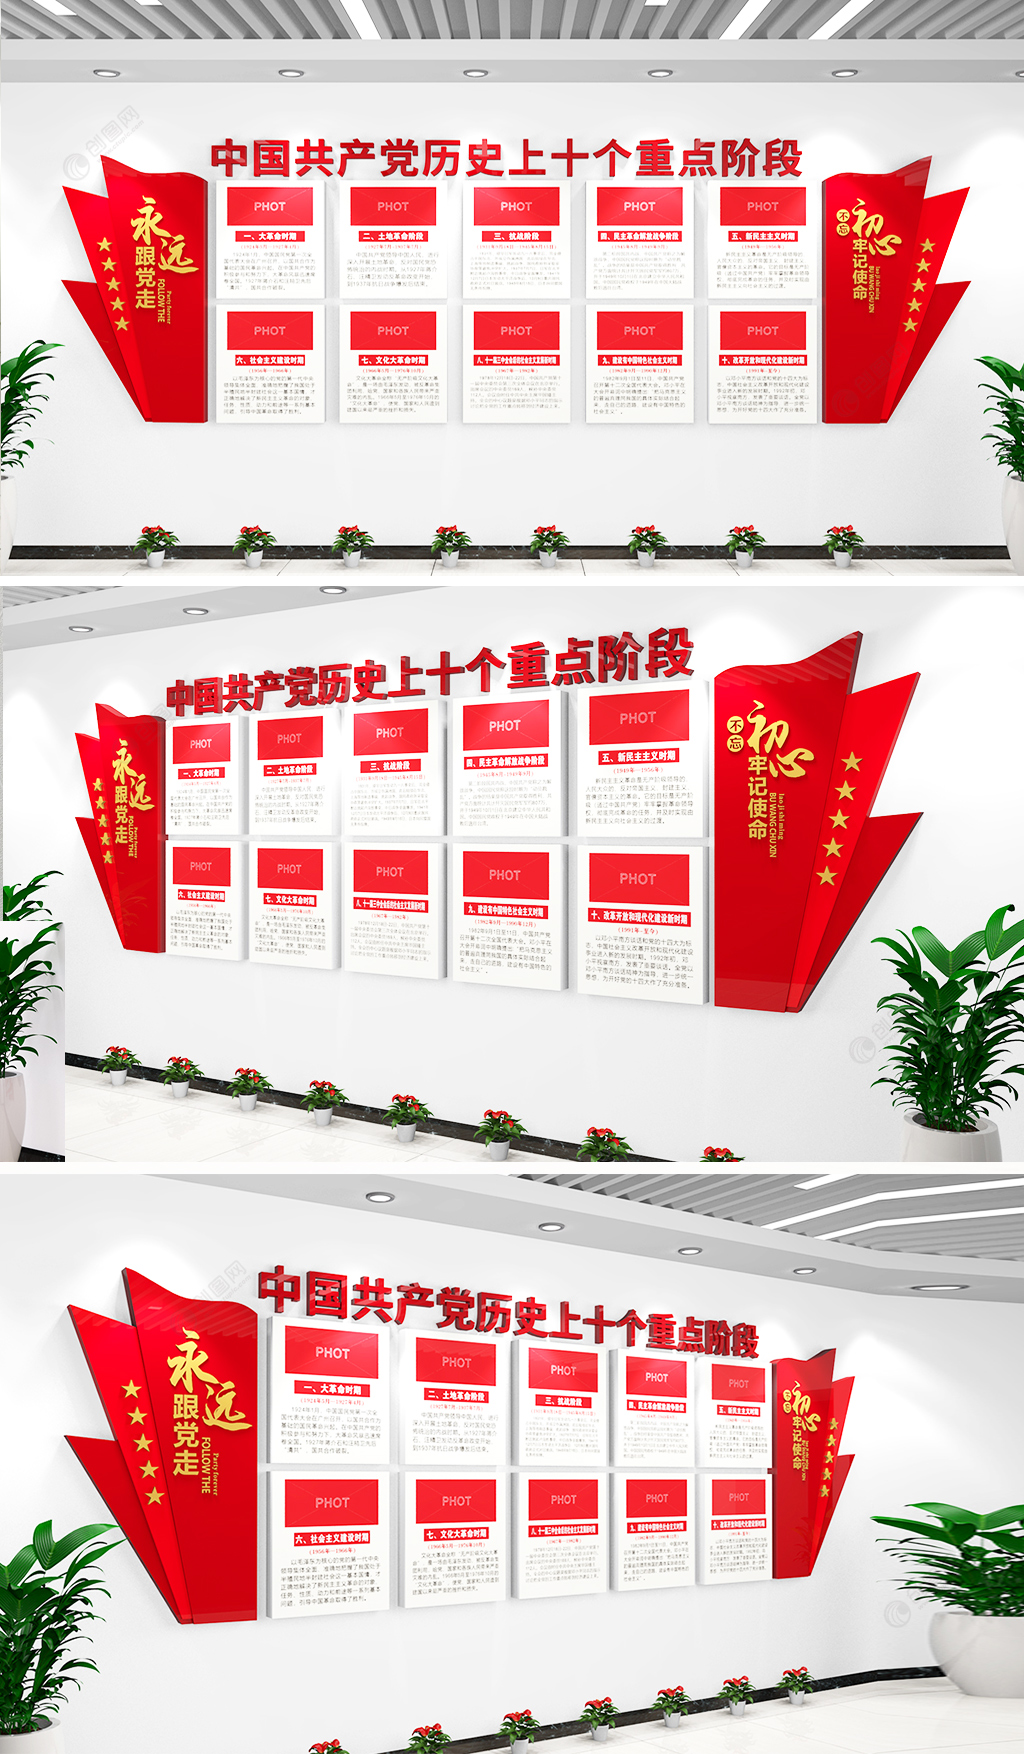 中国共产党发展十个阶段党史学习教育文化墙设